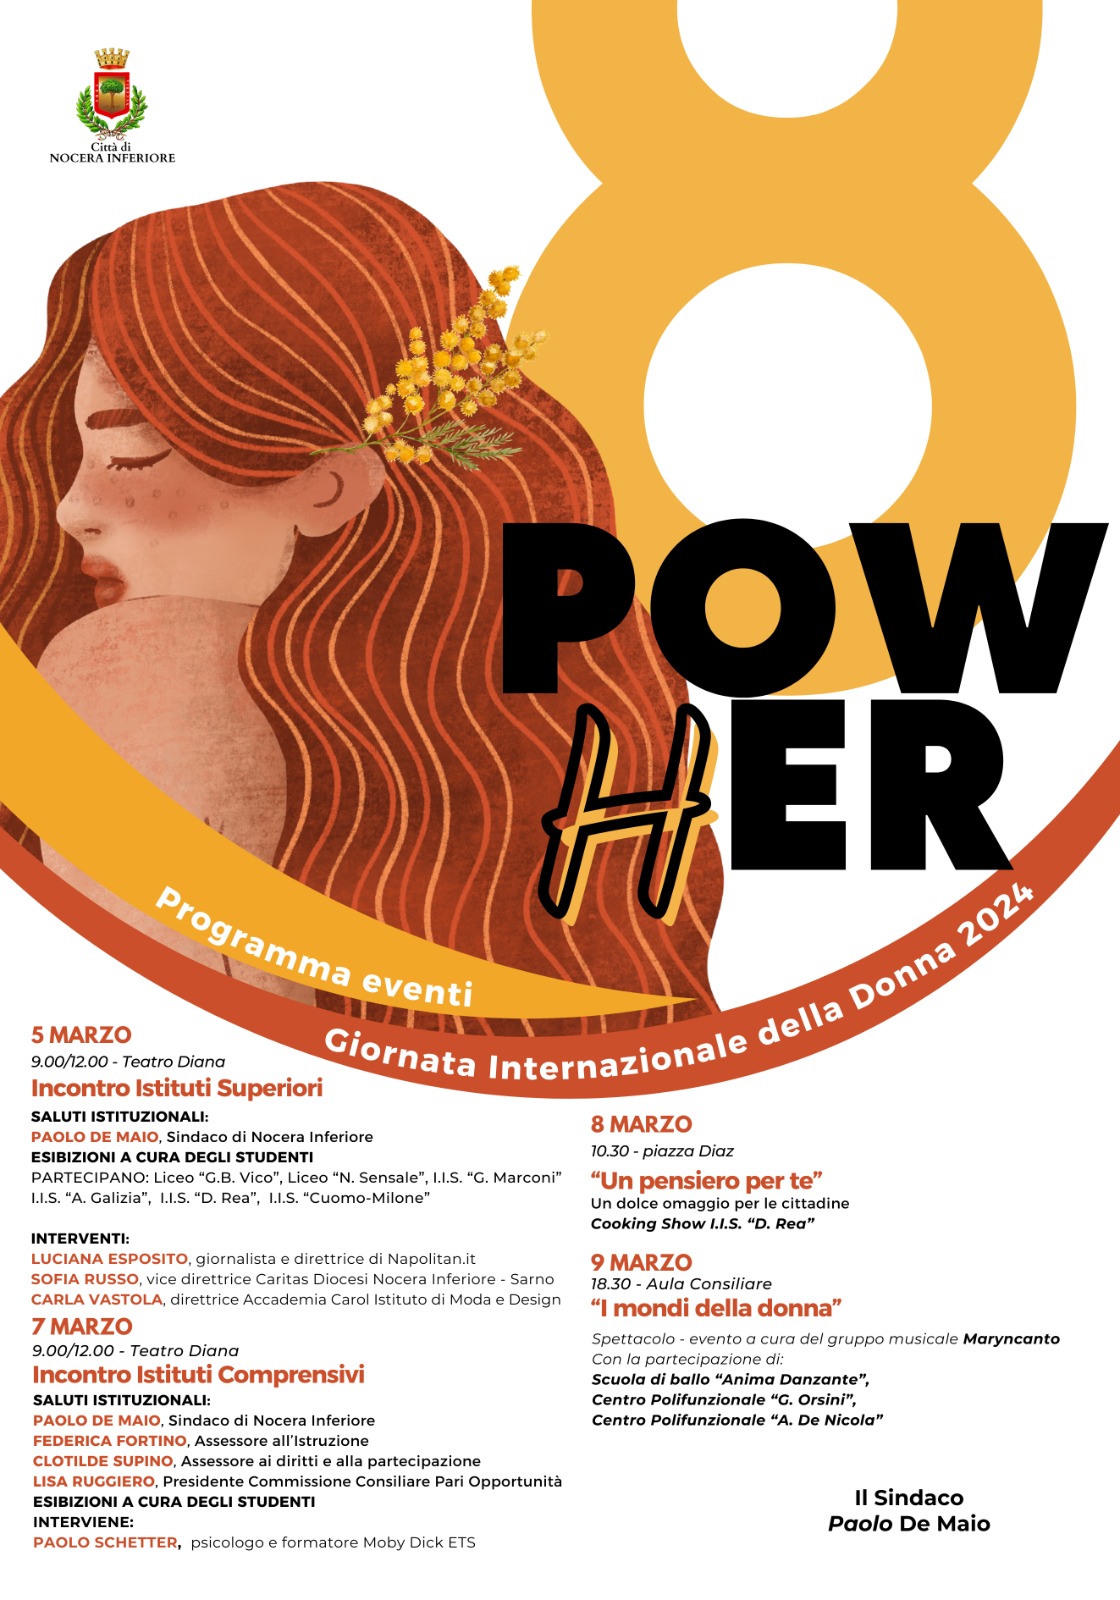 Nocera Inferiore: Giornata Internazionale della donna, al via “PowHer”